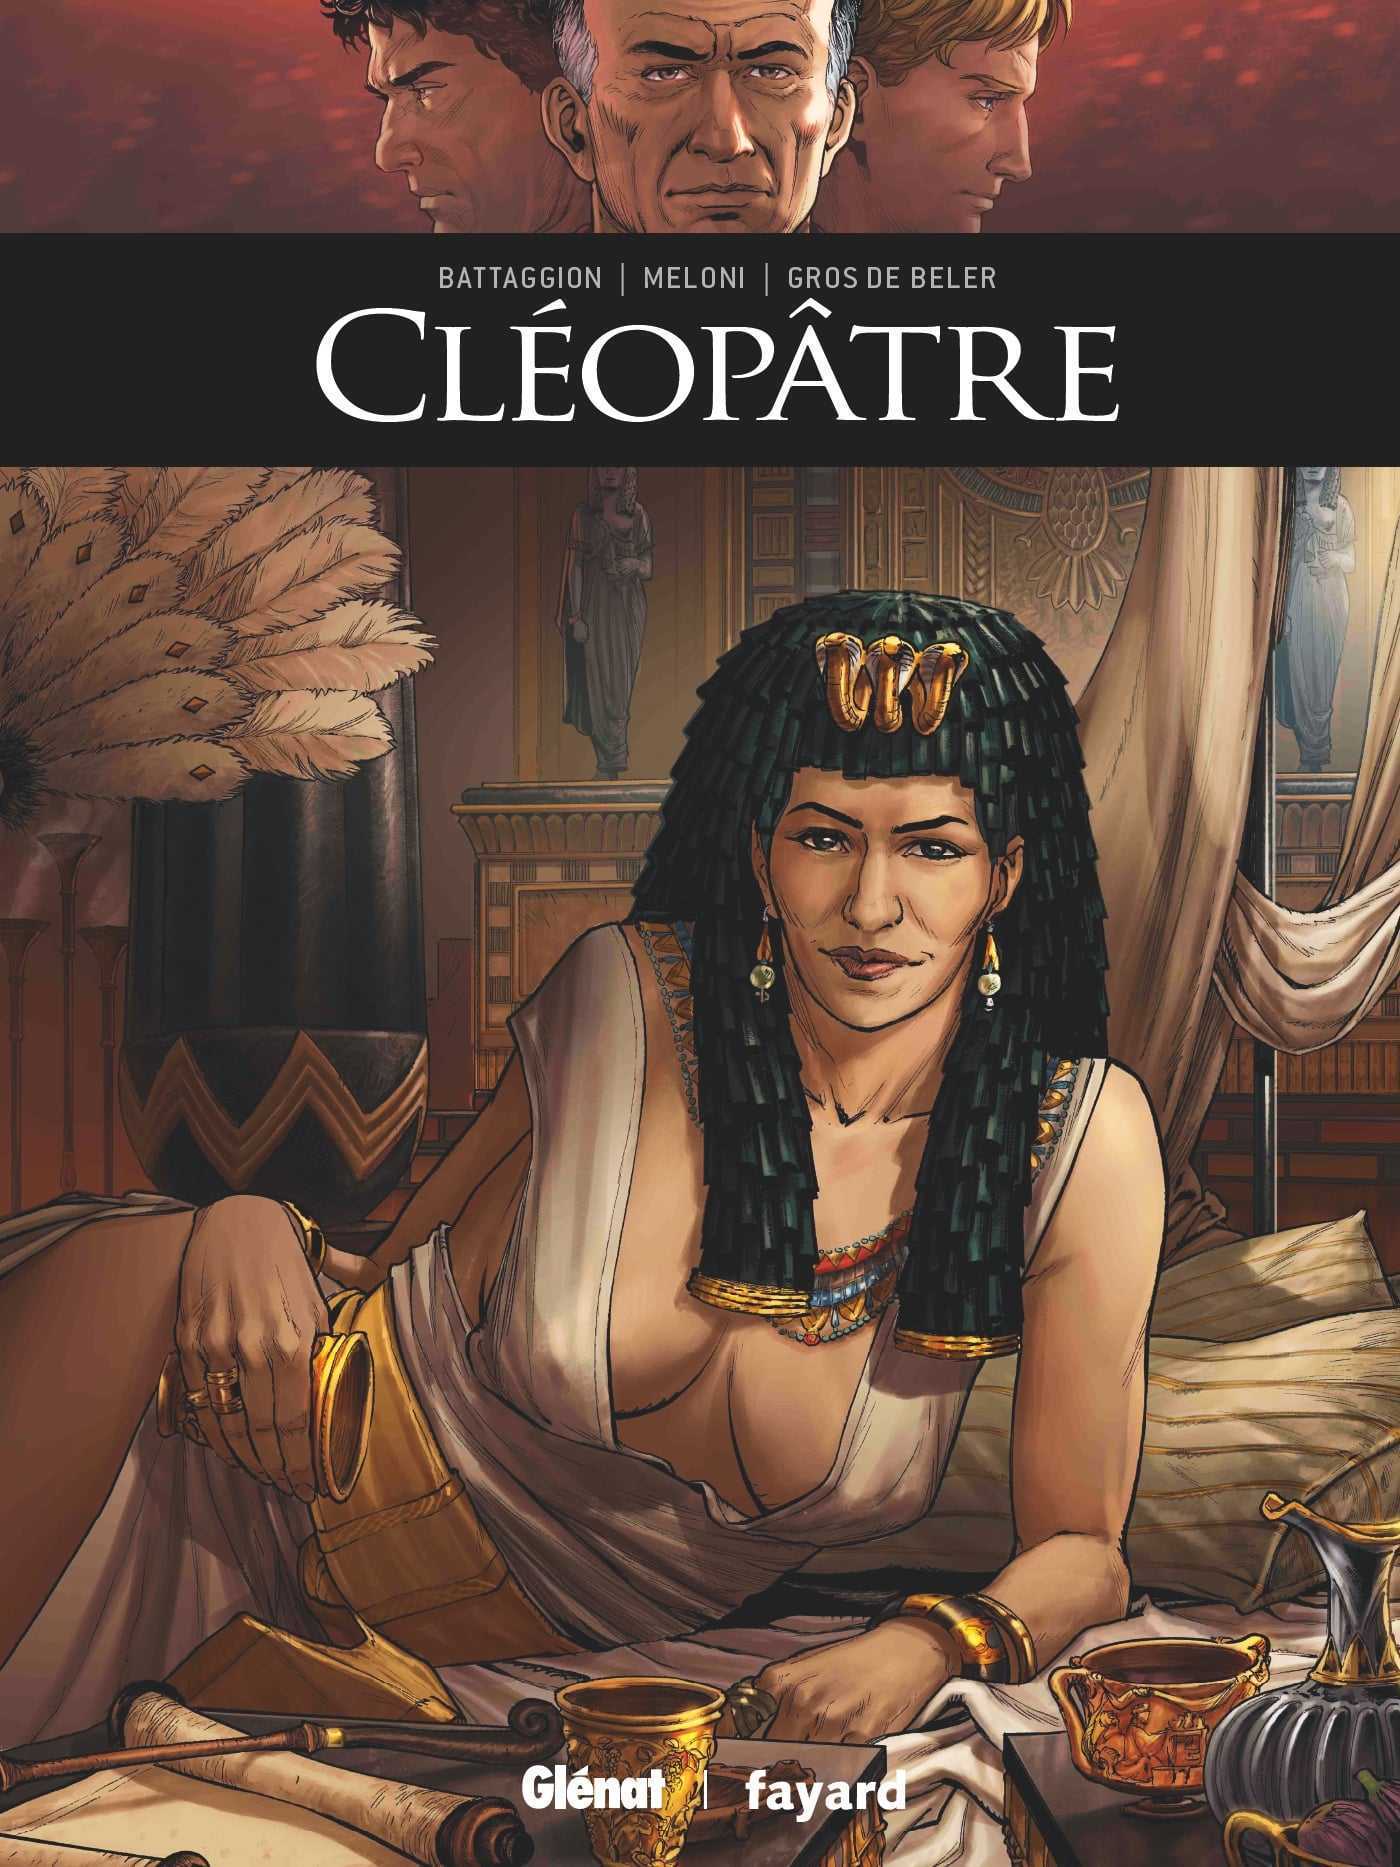 Cléopâtre, une reine manipulatrice et sulfureuse ? La vérité sur